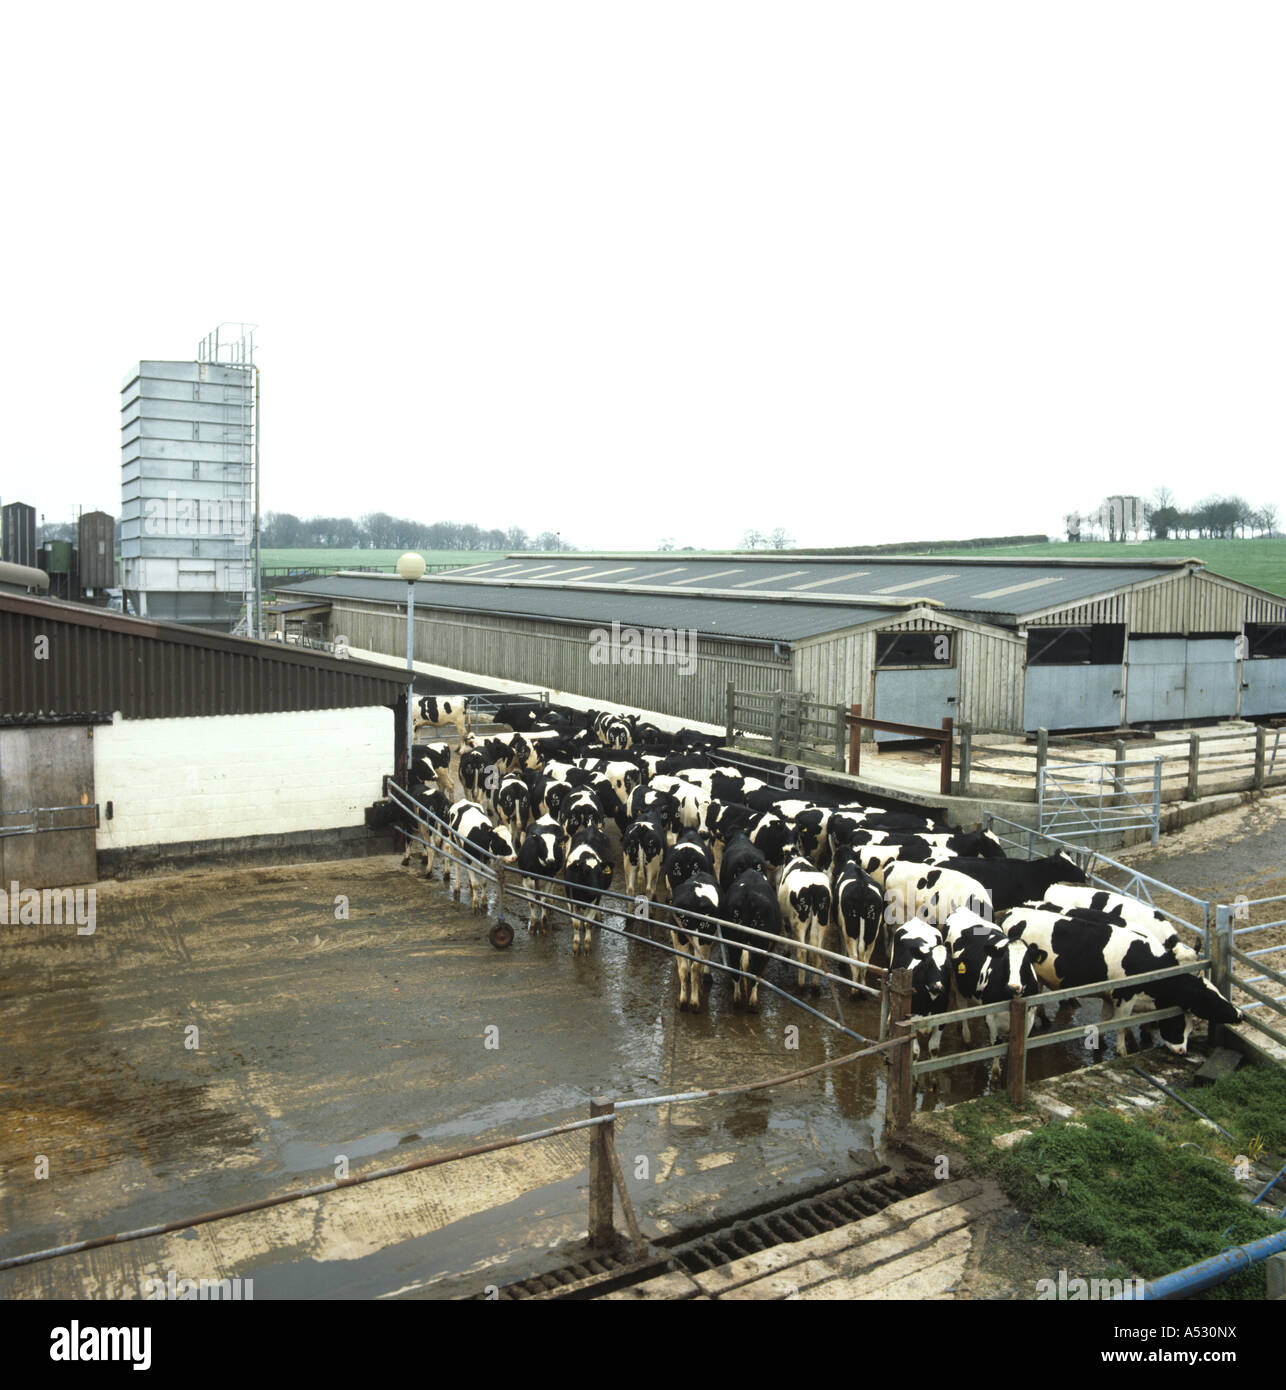 À la ferme en bas dans une cour avec des bovins génisses Holstein Friesian Banque D'Images